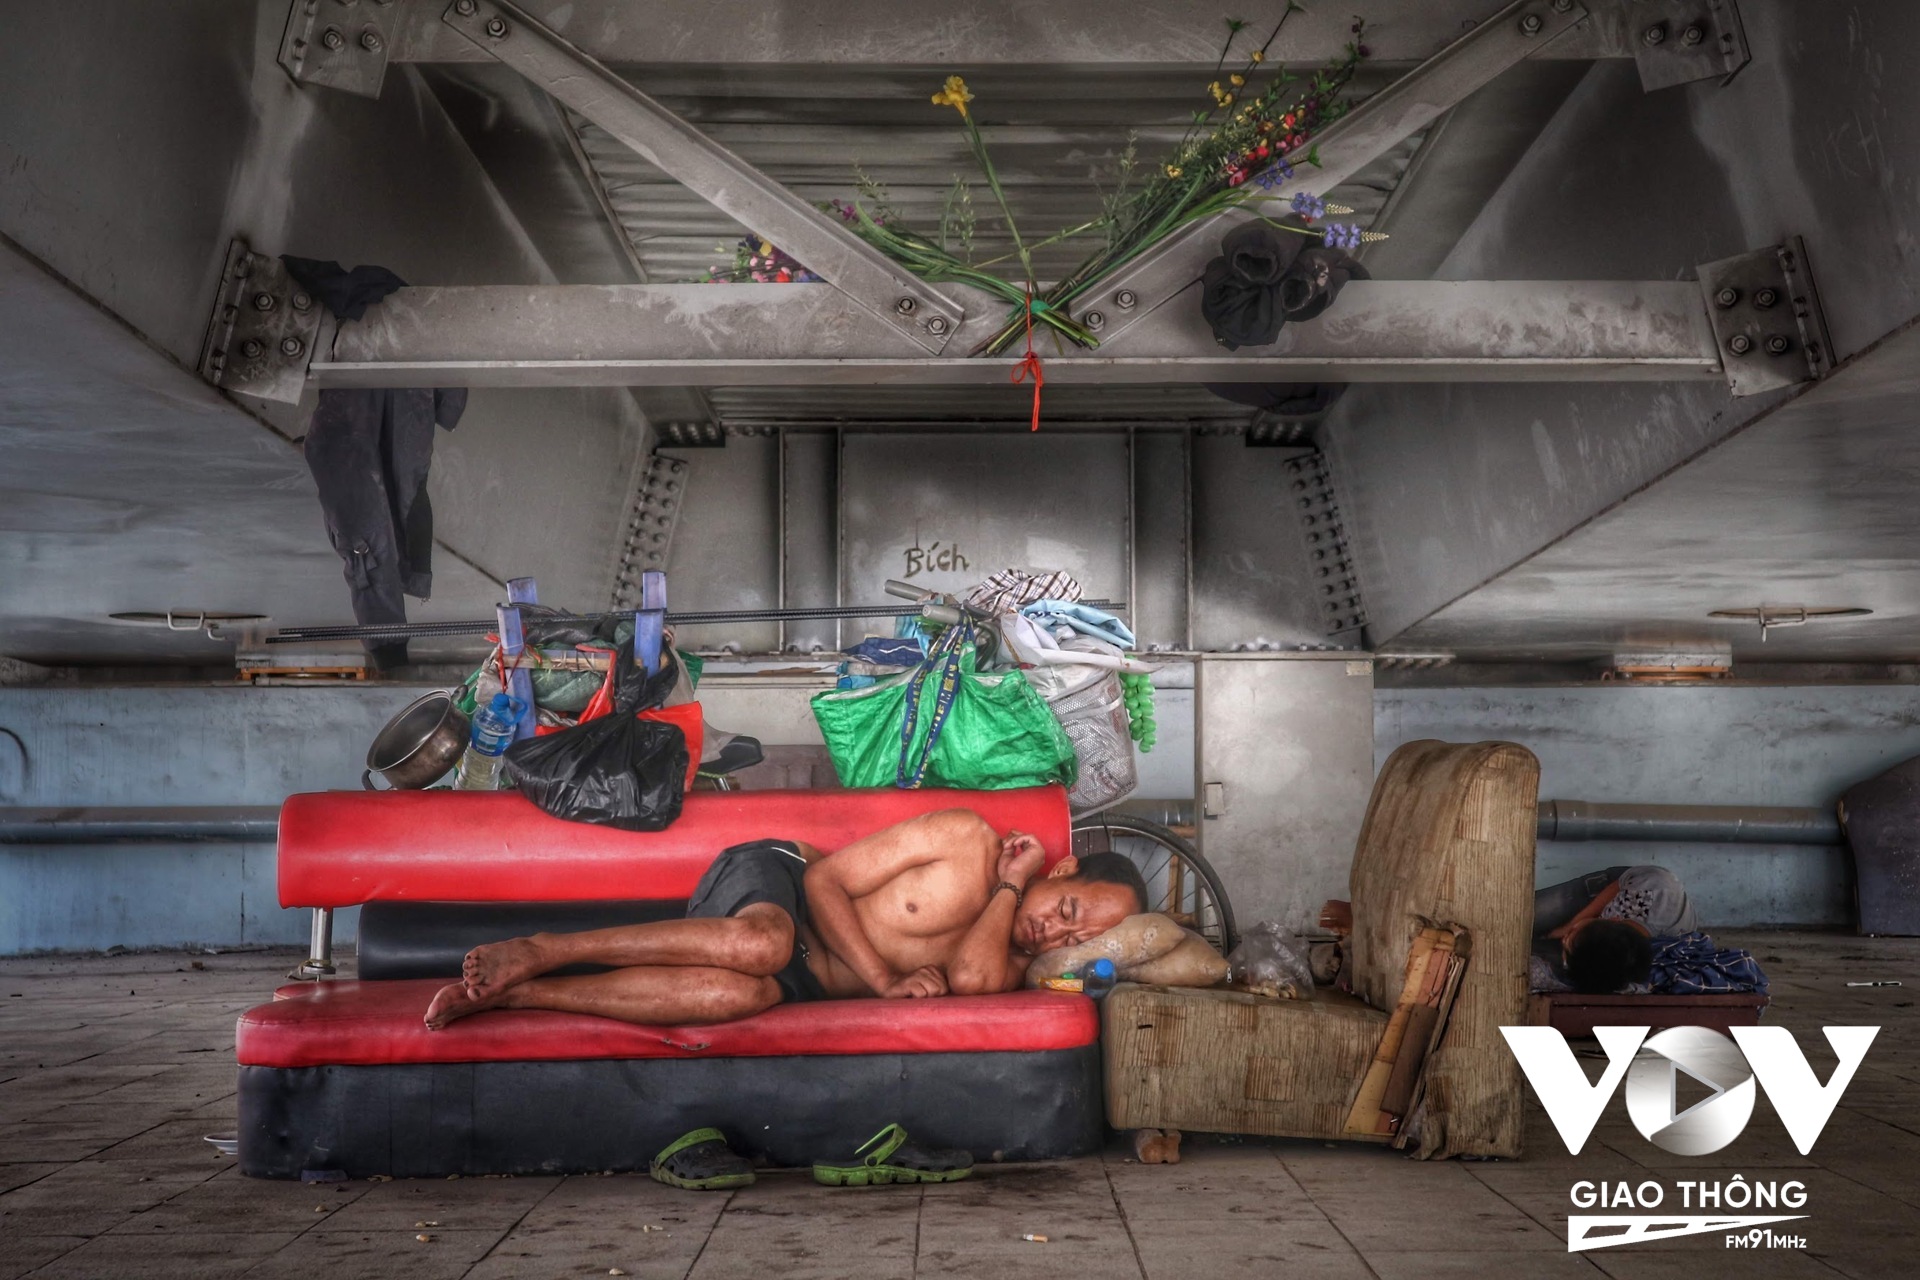 Giấc ngủ ngon lành dưới gầm cầu của một người vô gia cư. Chiếc xe đạp dựng bên cạnh cũng không lo bị mất, như các phương tiện đắt tiền khác...